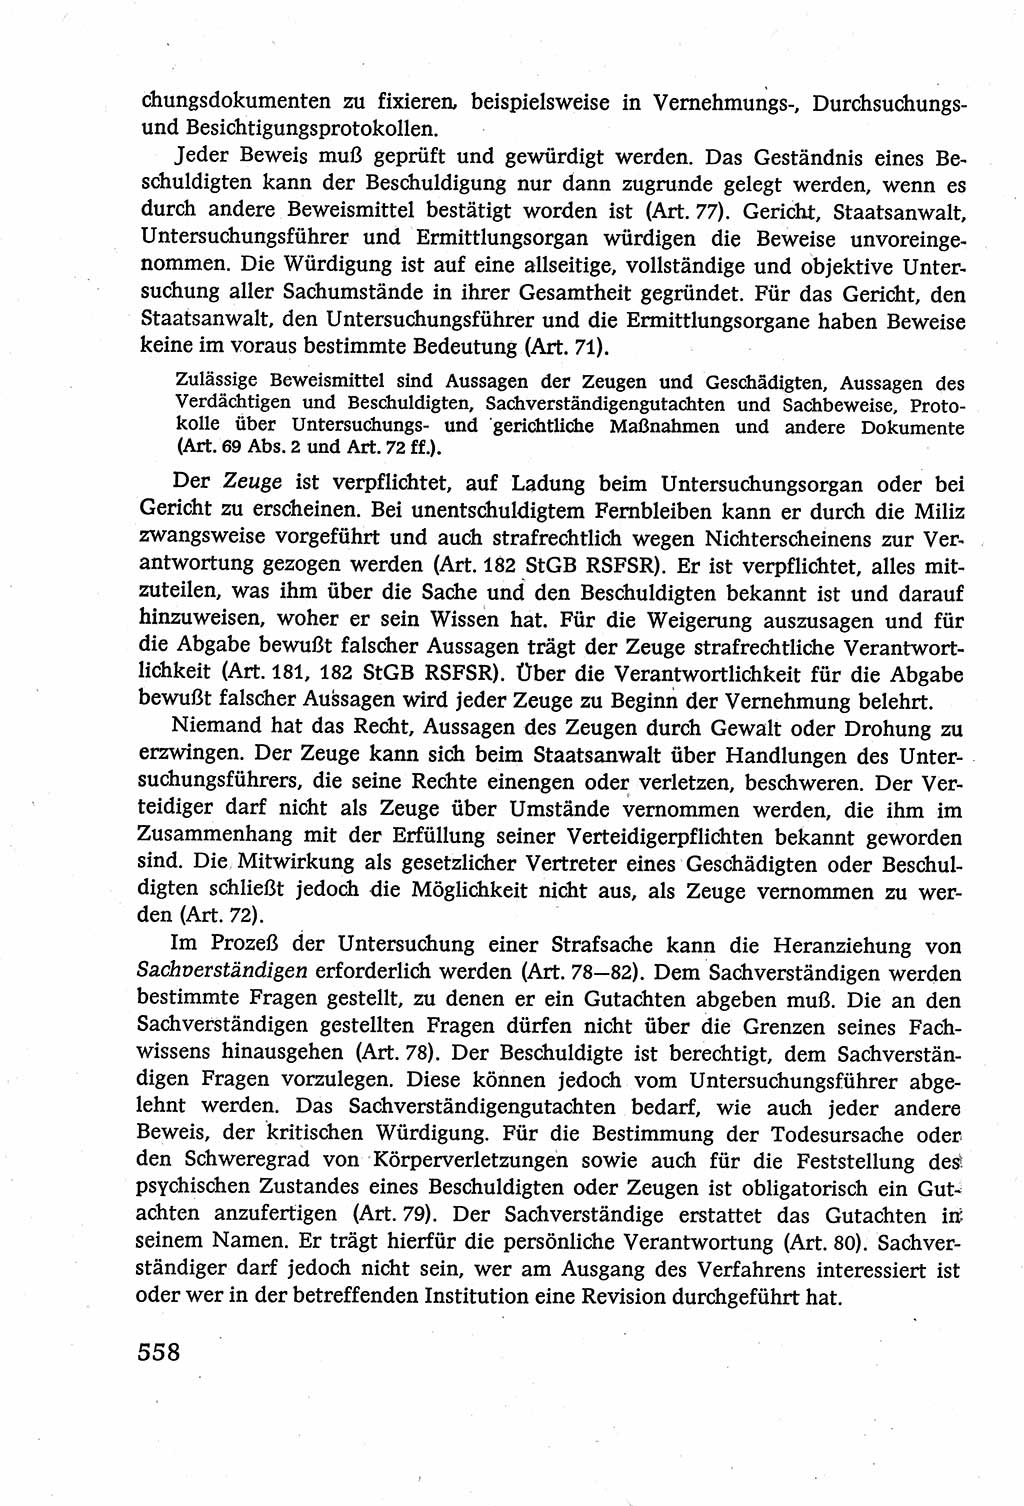 Strafverfahrensrecht [Deutsche Demokratische Republik (DDR)], Lehrbuch 1977, Seite 558 (Strafverf.-R. DDR Lb. 1977, S. 558)